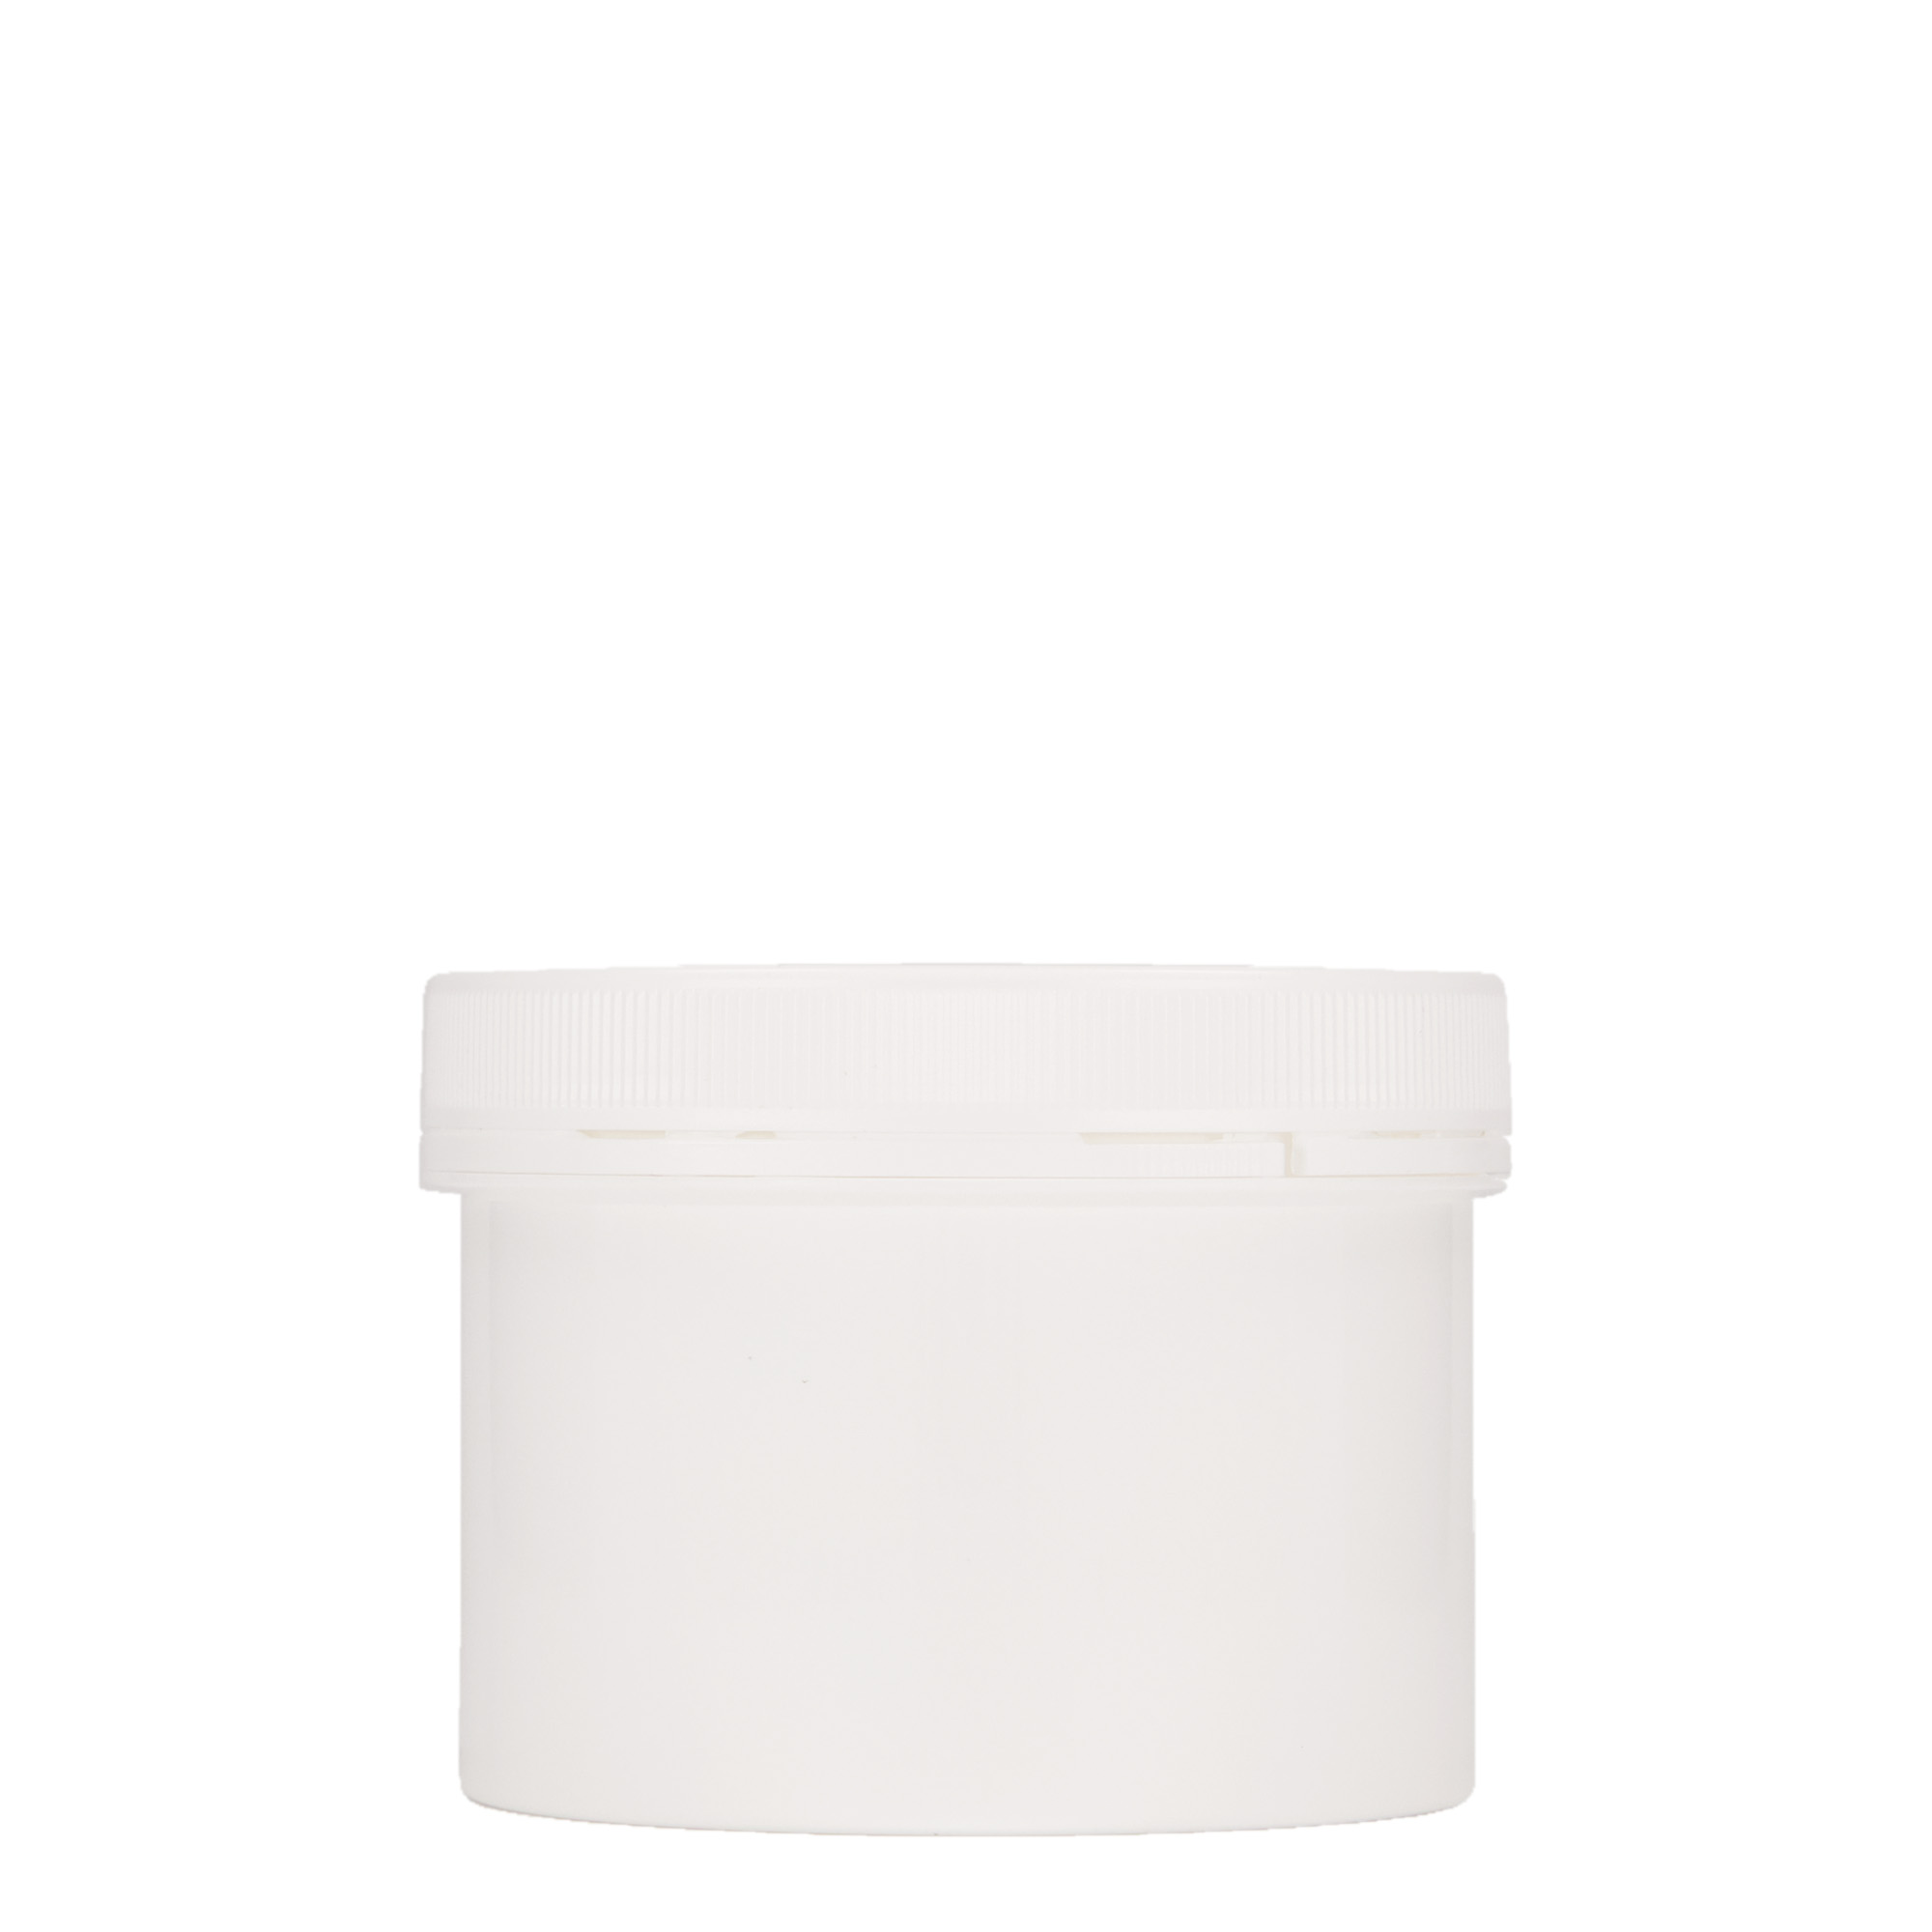 300 ml plastic jar 'Securilock', PP, white, closure: screw cap